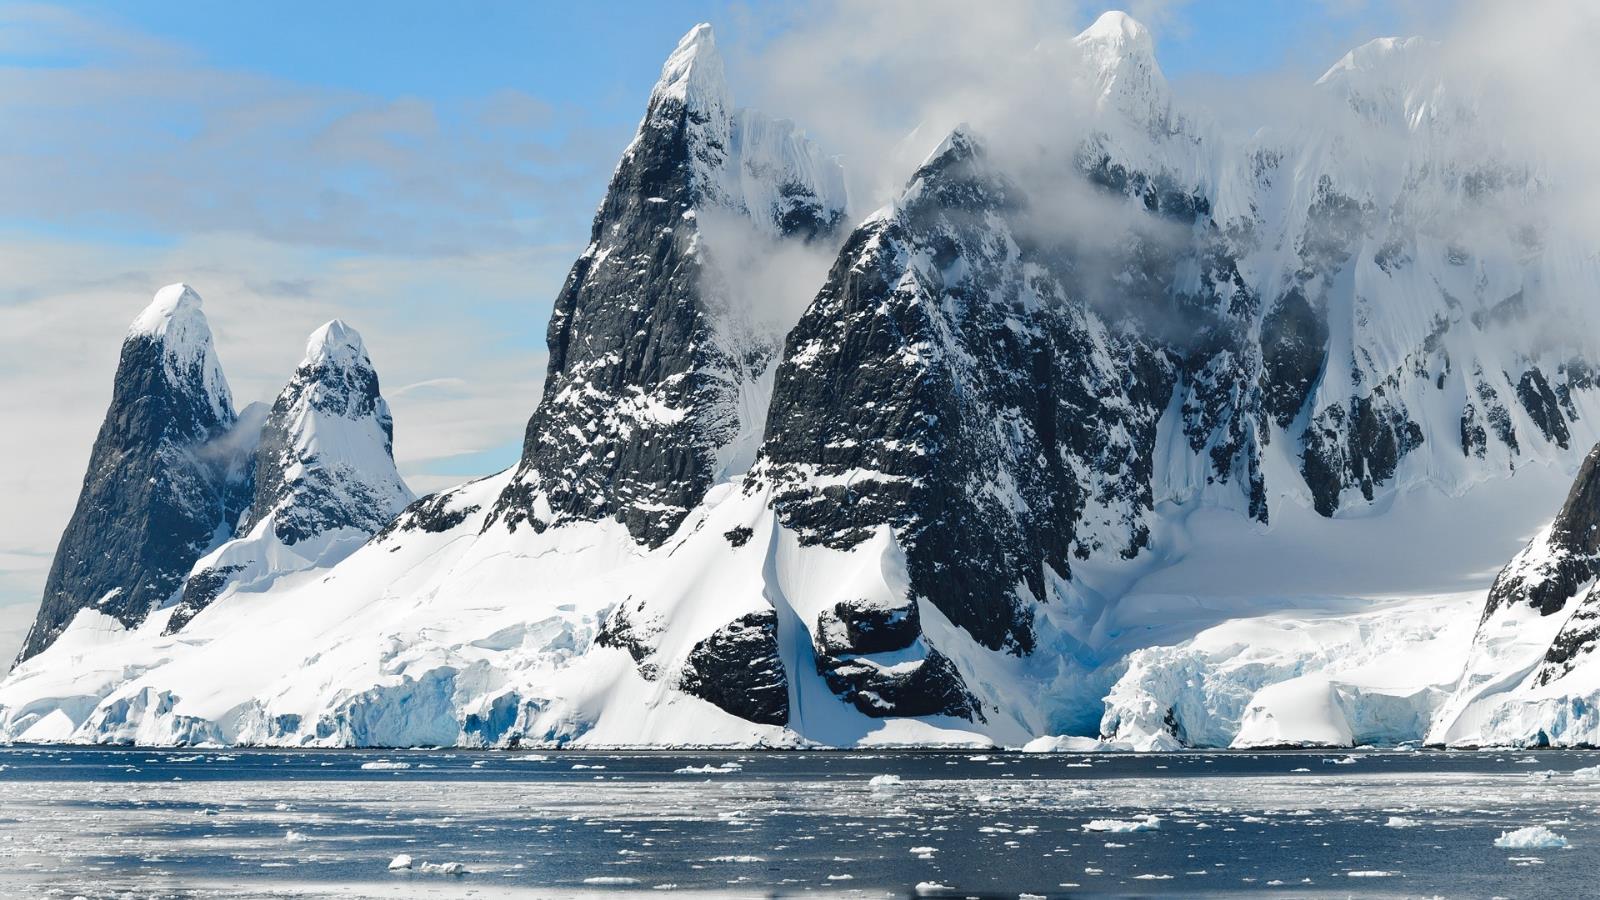 ‪التغلب على مشكلة الاحترار المناخي الذي يتسبب في انهيار الصفائح الجليدية في أنتاركتيكا يأتي في المقام الأول‬ (بيكساباي)